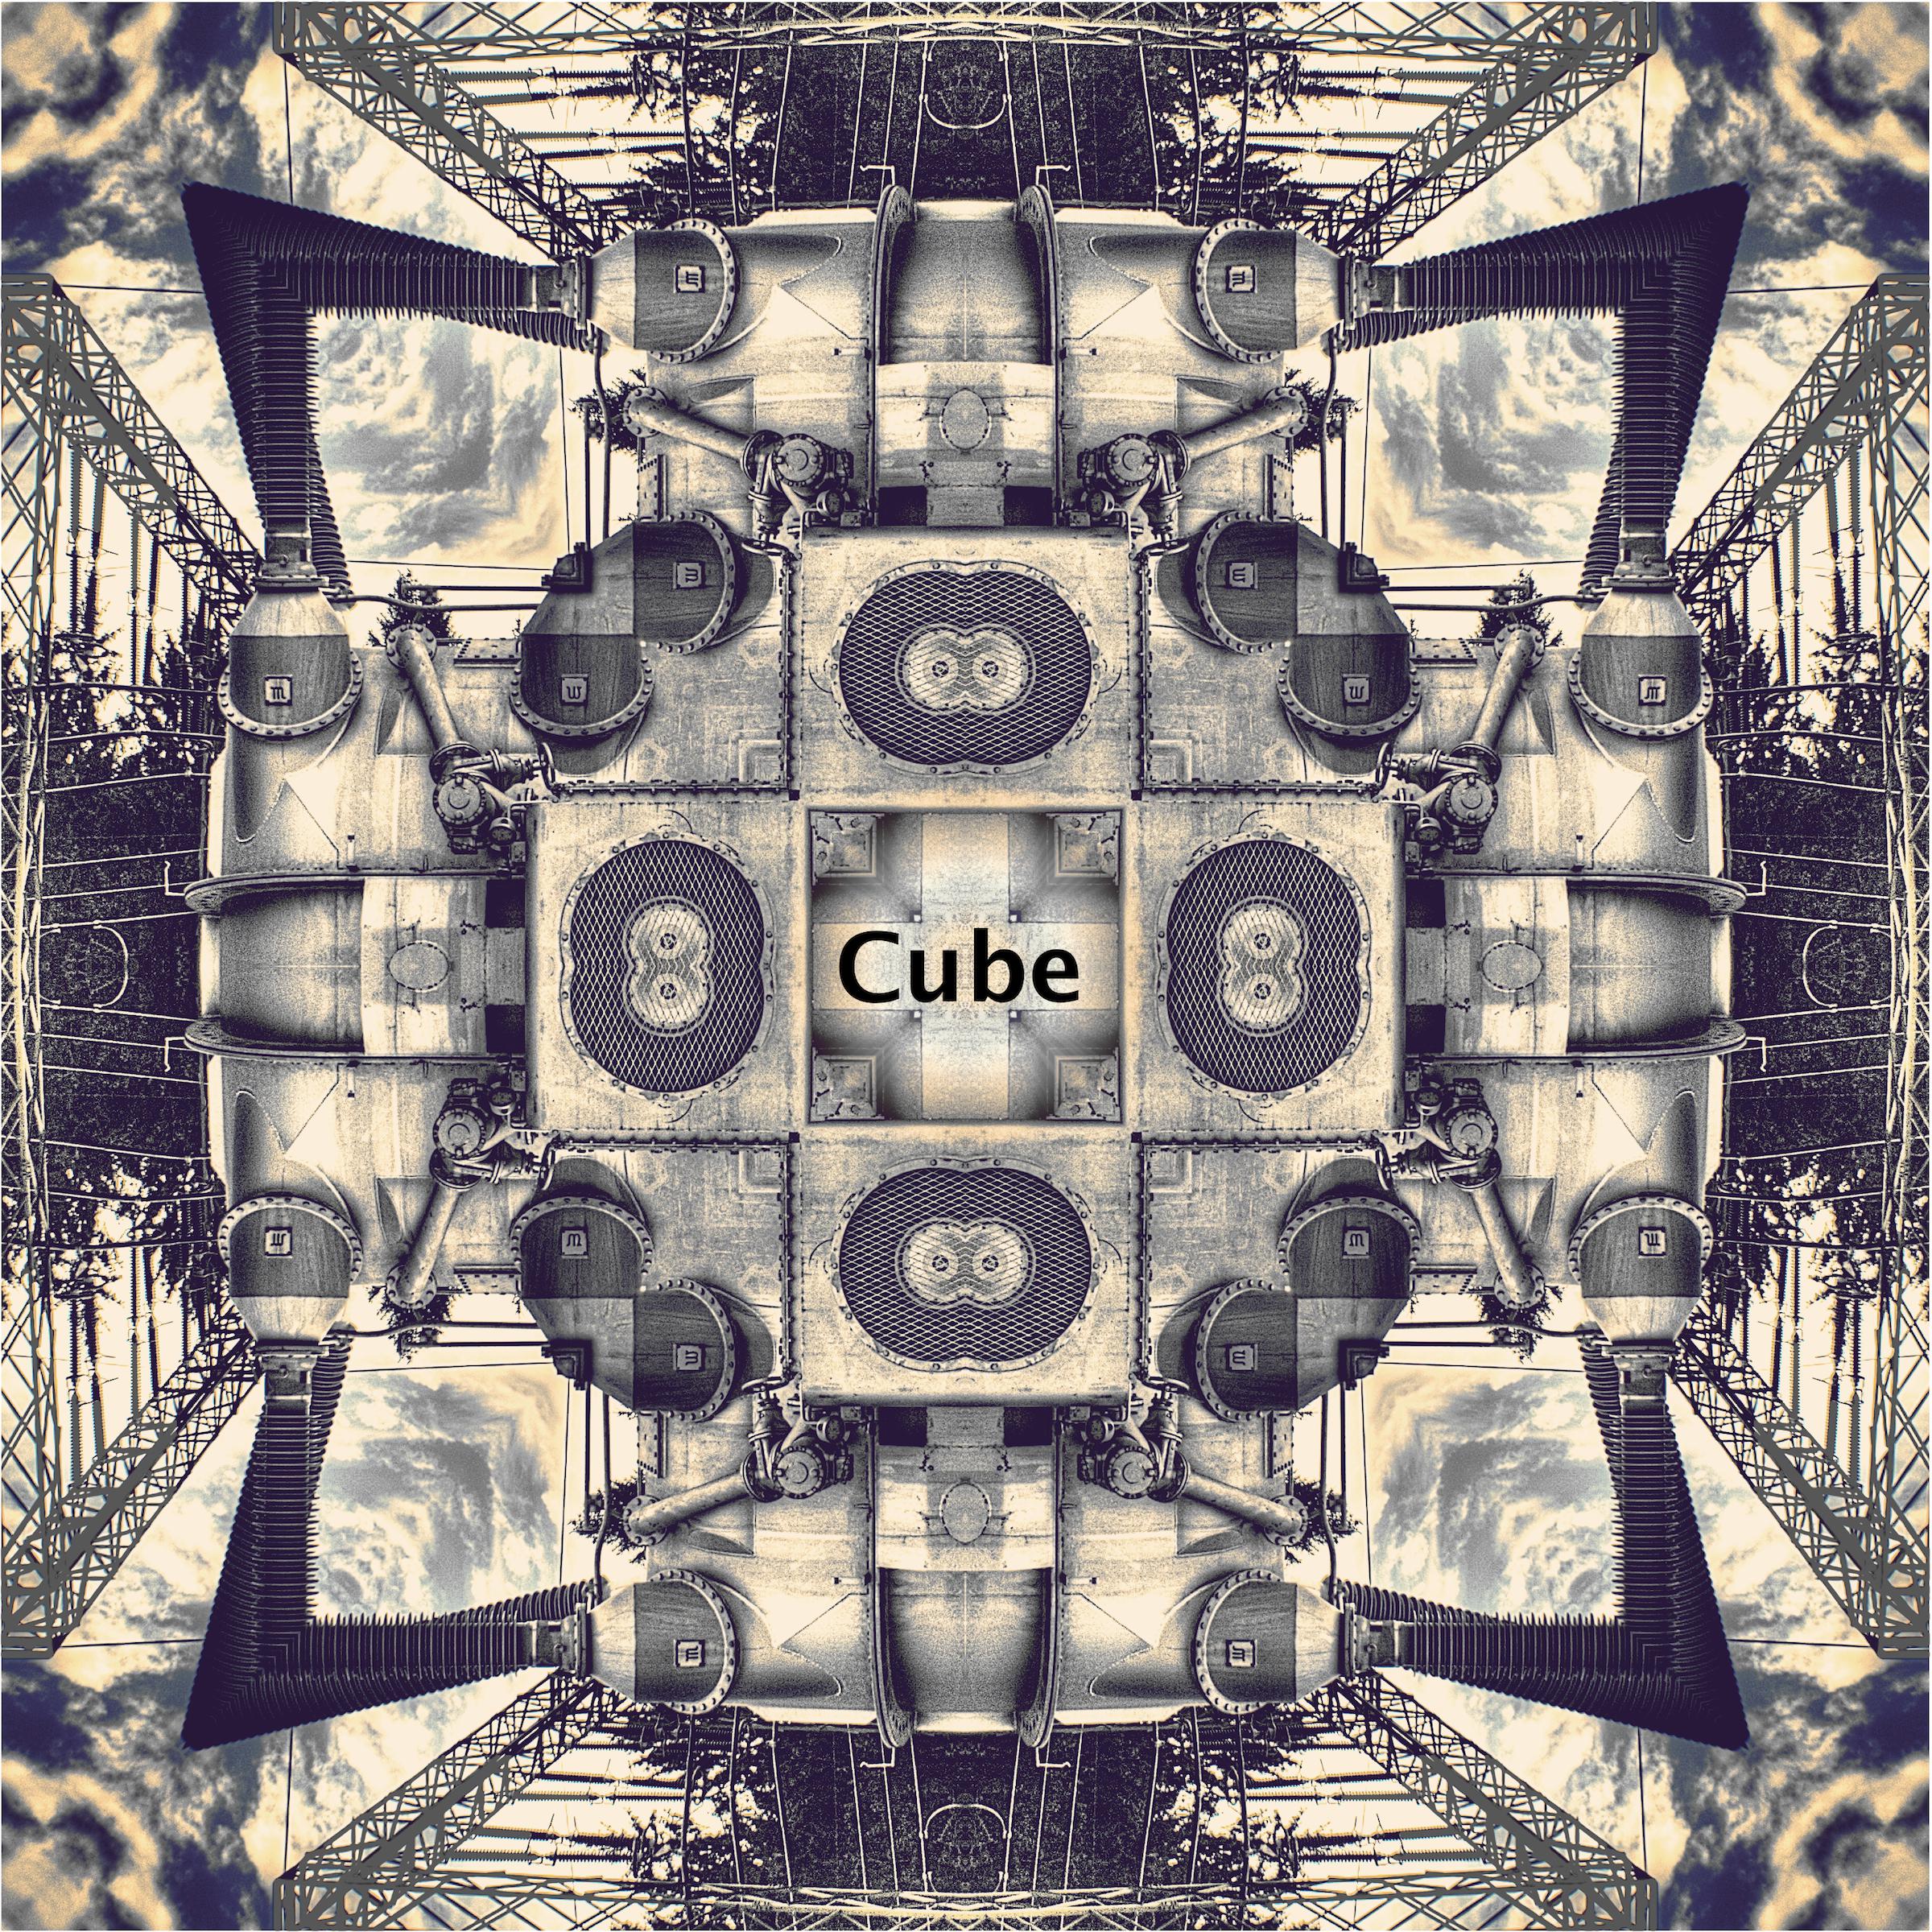 Gerry Fischer - Cube (Room Version)